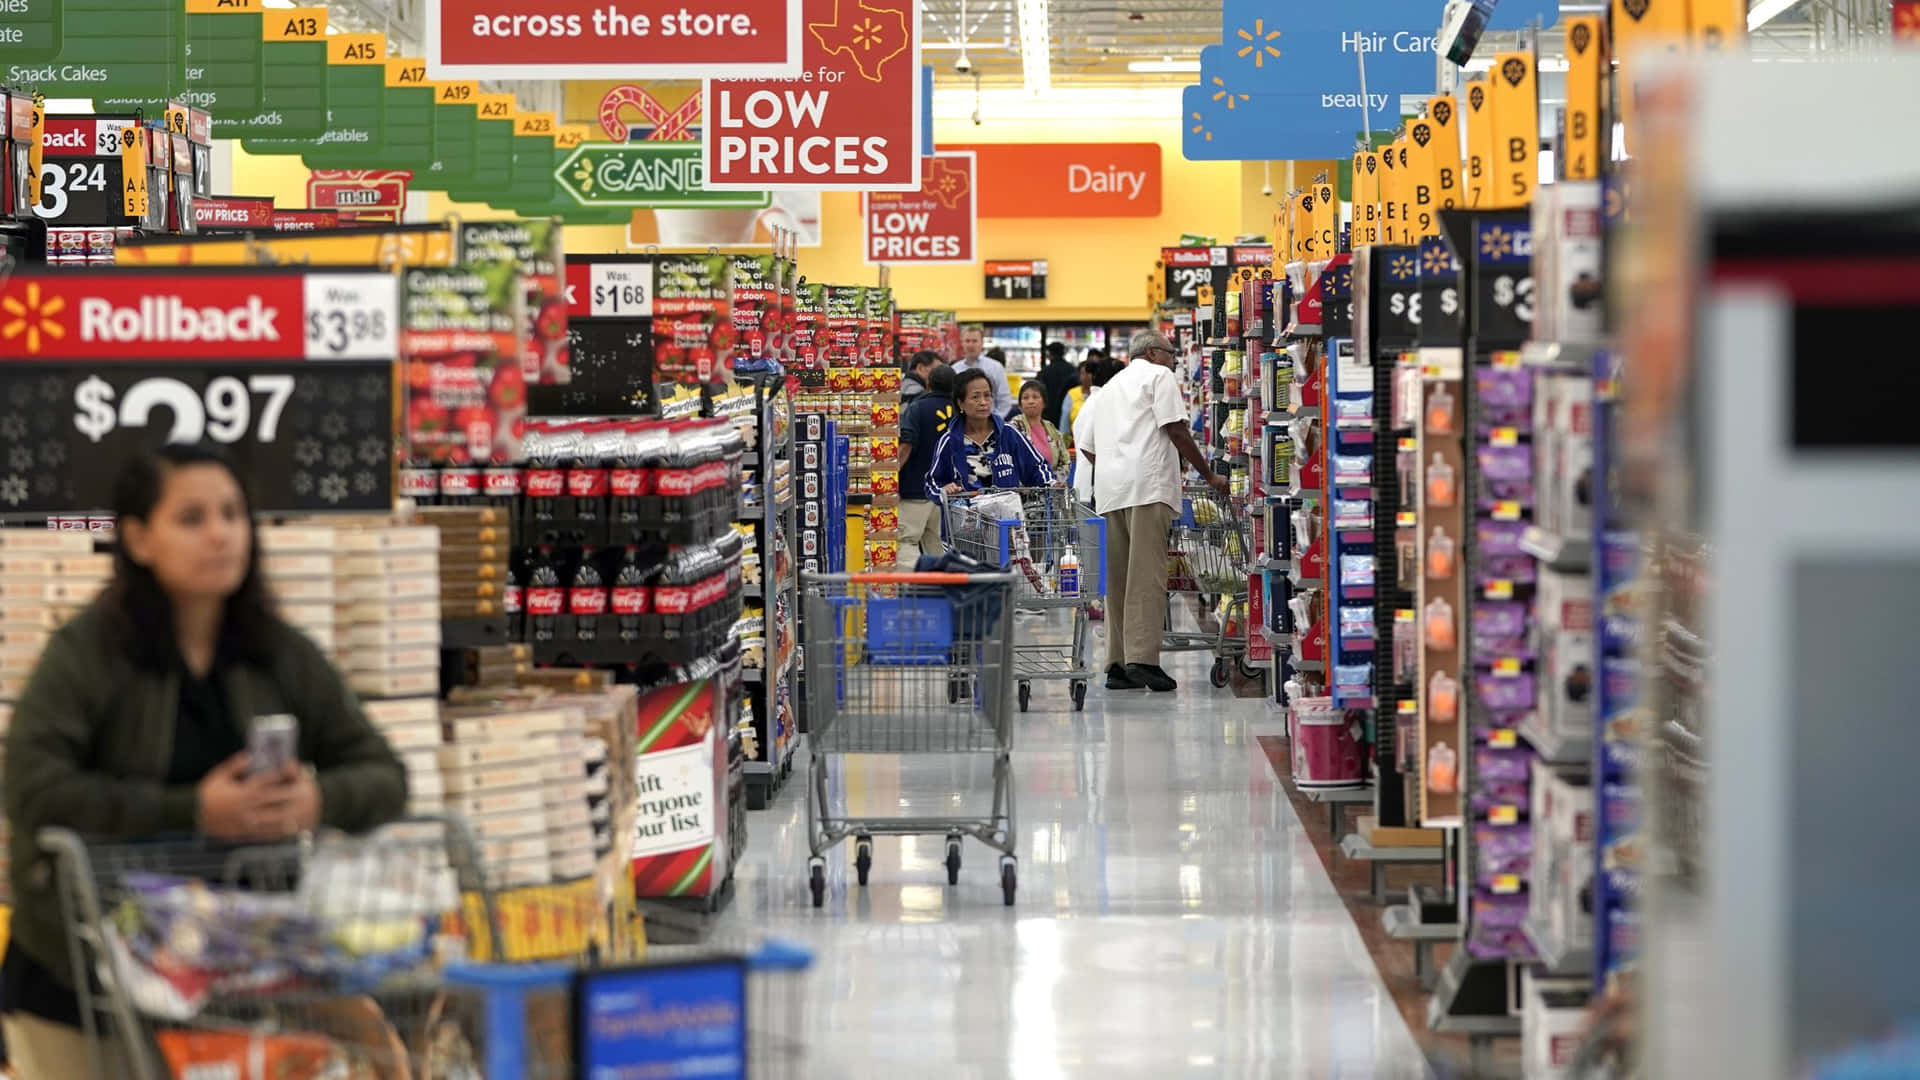 Loscompradores De Walmart Encuentran Las Mejores Ofertas.